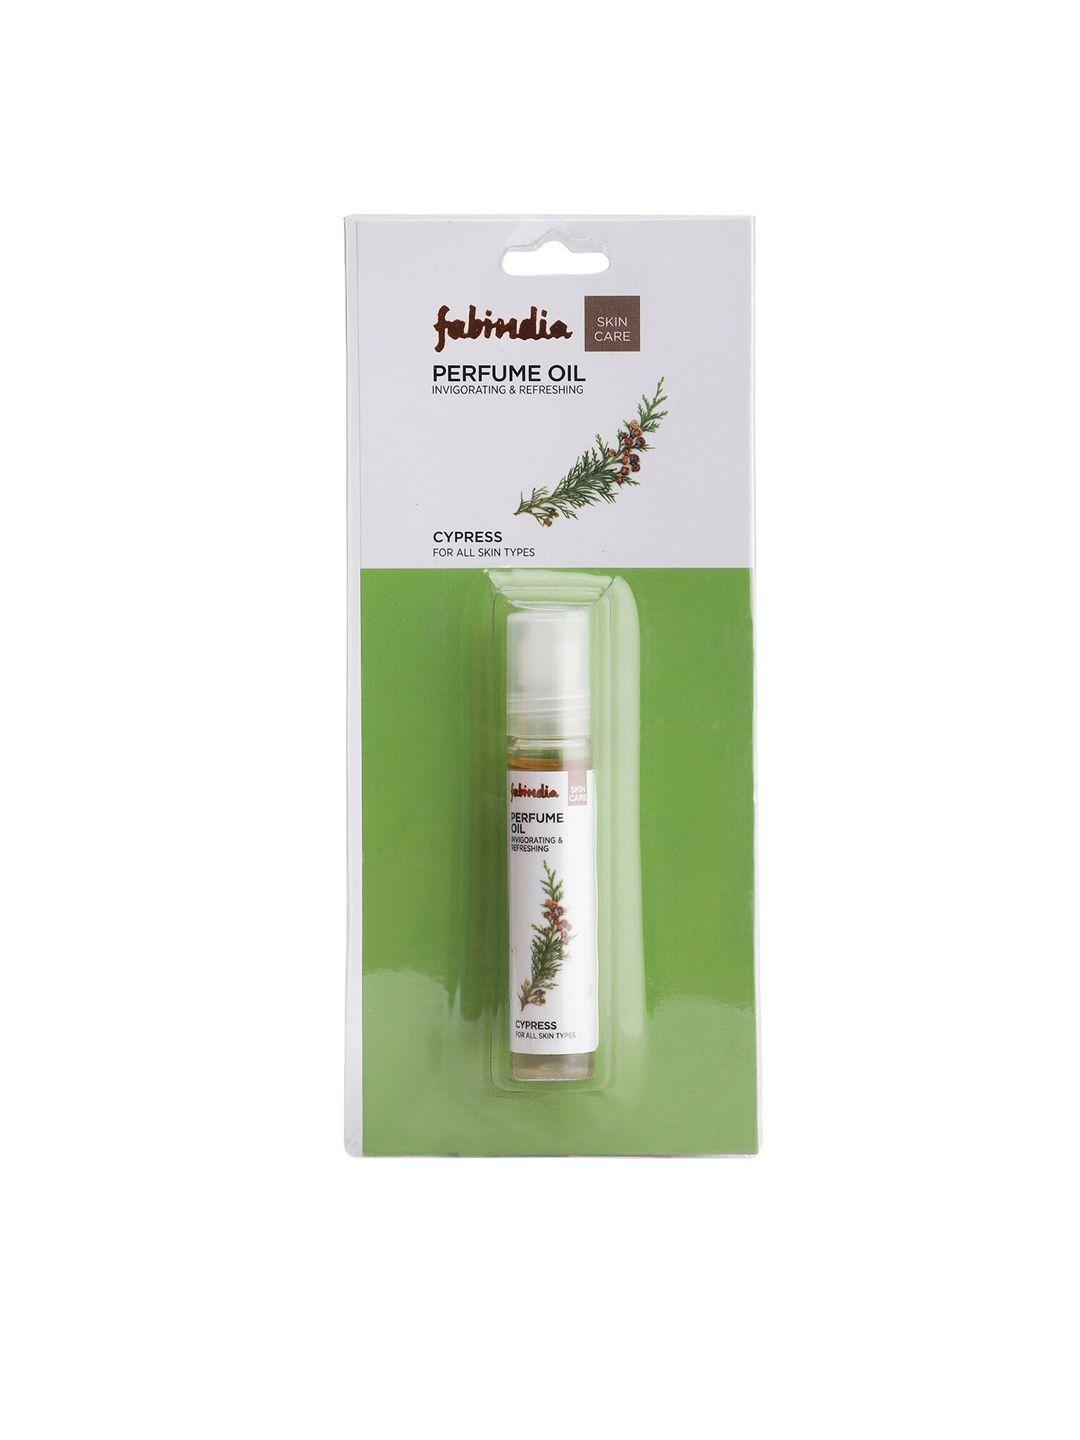 fabindia cypress perfume oil 9ml